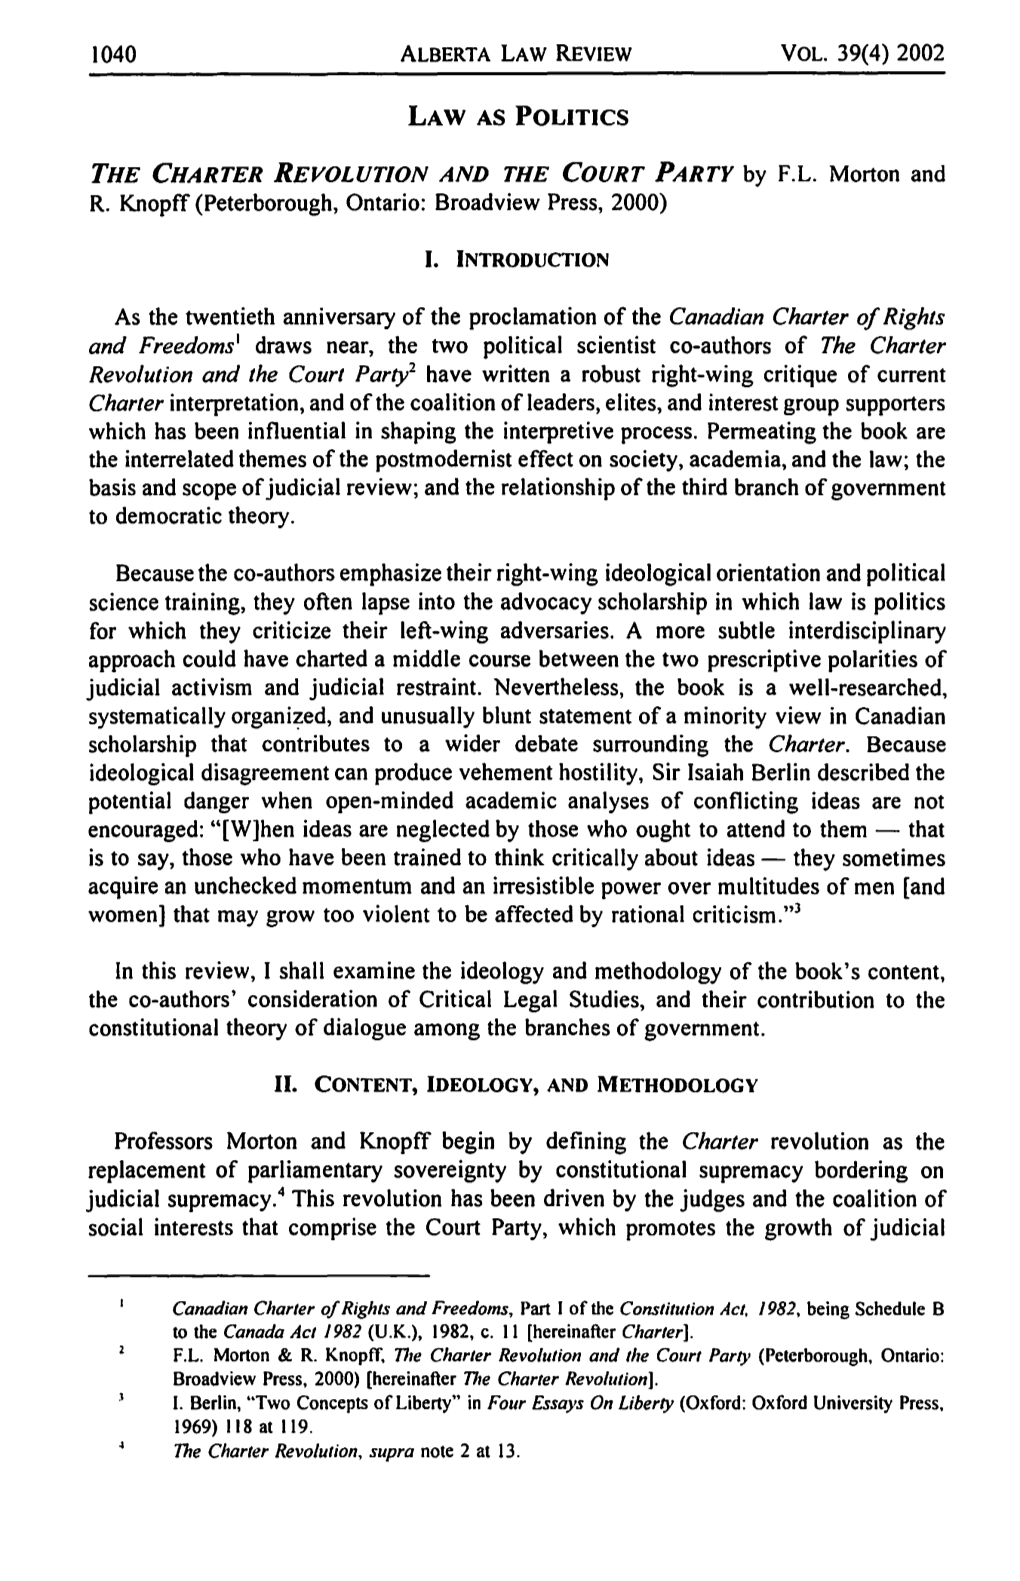 Vol. 39(4) 2002 Law As Politics